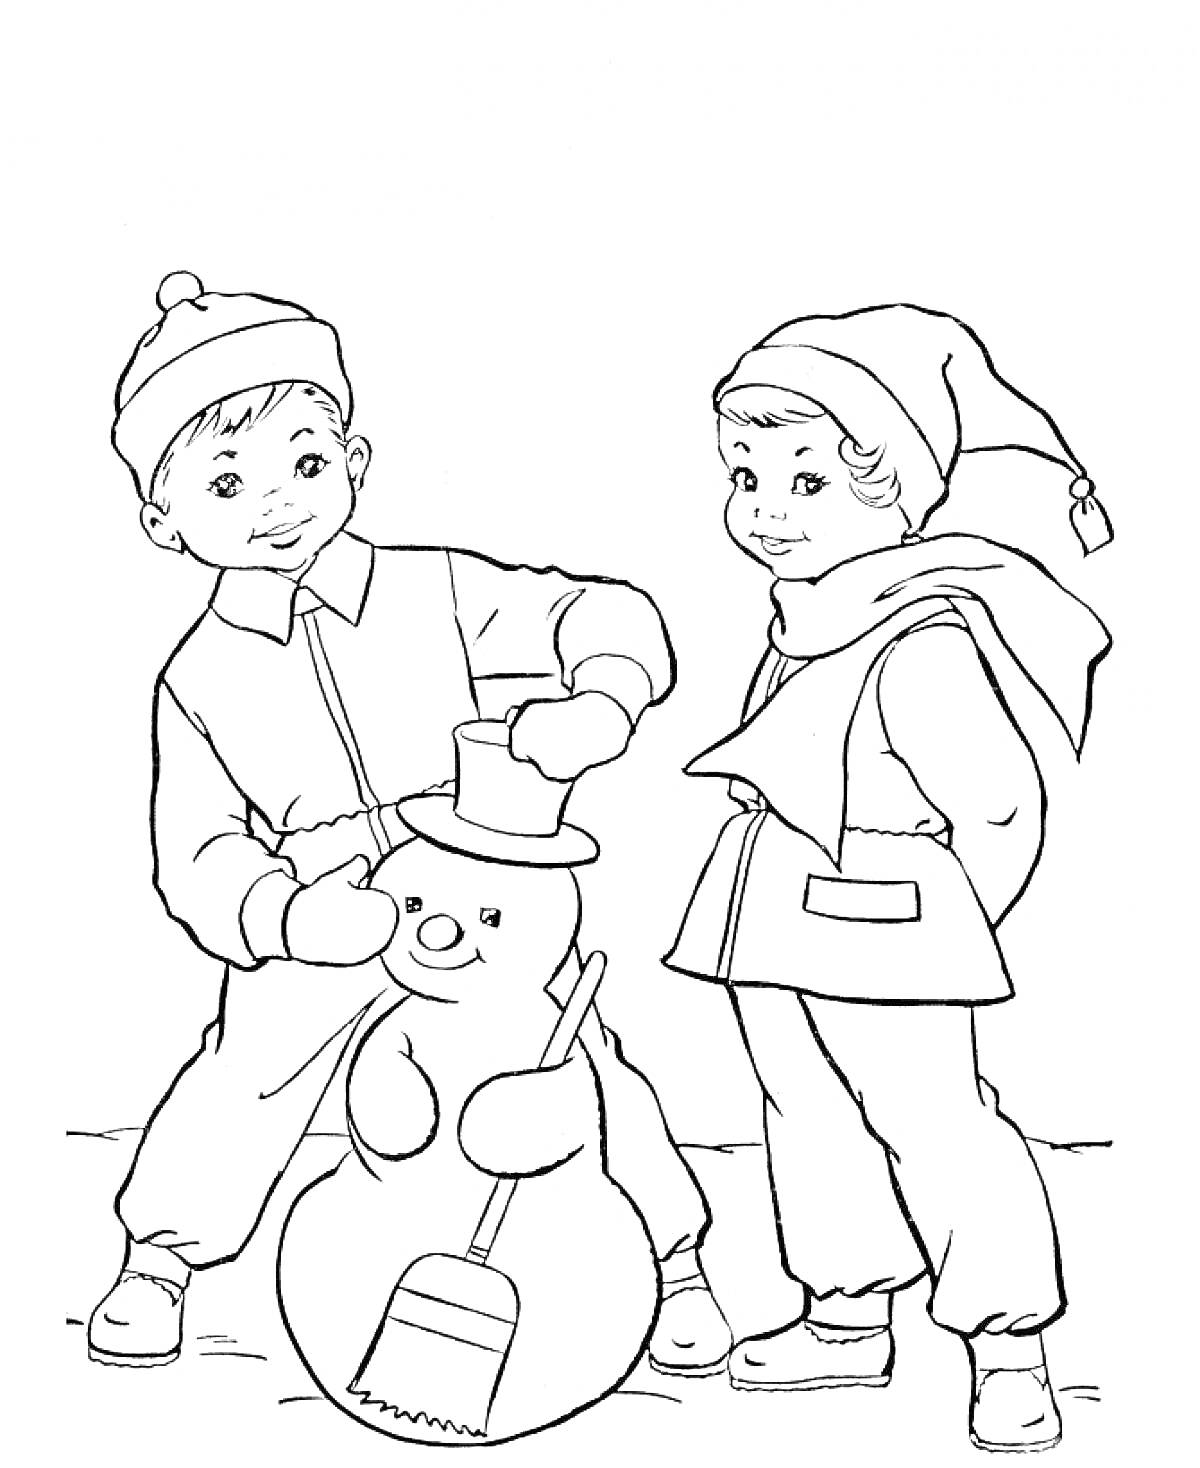 РаскраскаМальчик и девочка лепят снеговика с метлой и шляпой